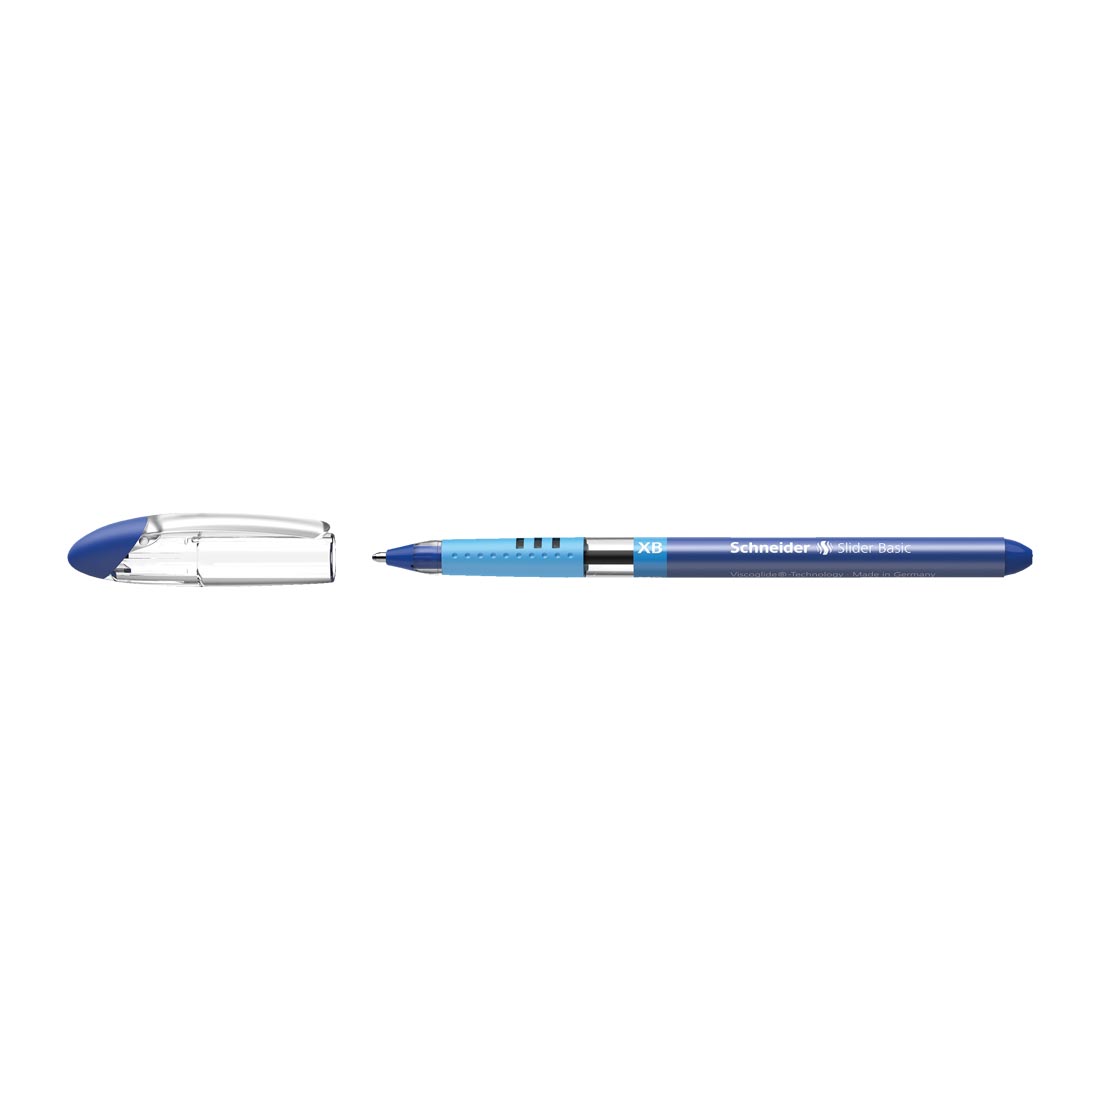 Slider BASIC Ballpoint Pen XB, Box of 10#ink-color_blue